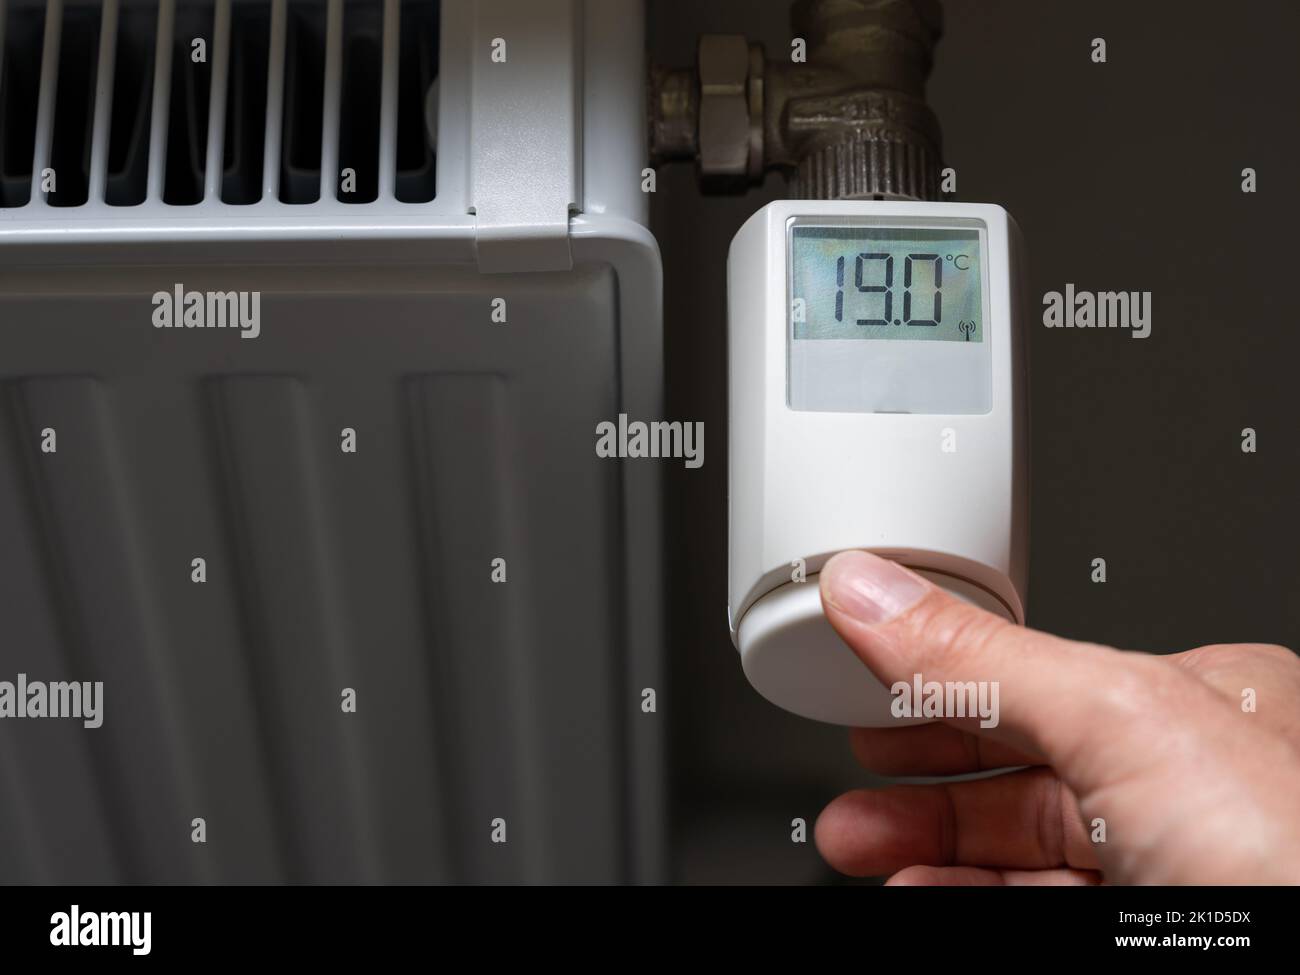 La commande manuelle abaisse la température à 19 degrés Celsius sur un thermostat électronique. Symbole d'économie d'énergie. Banque D'Images